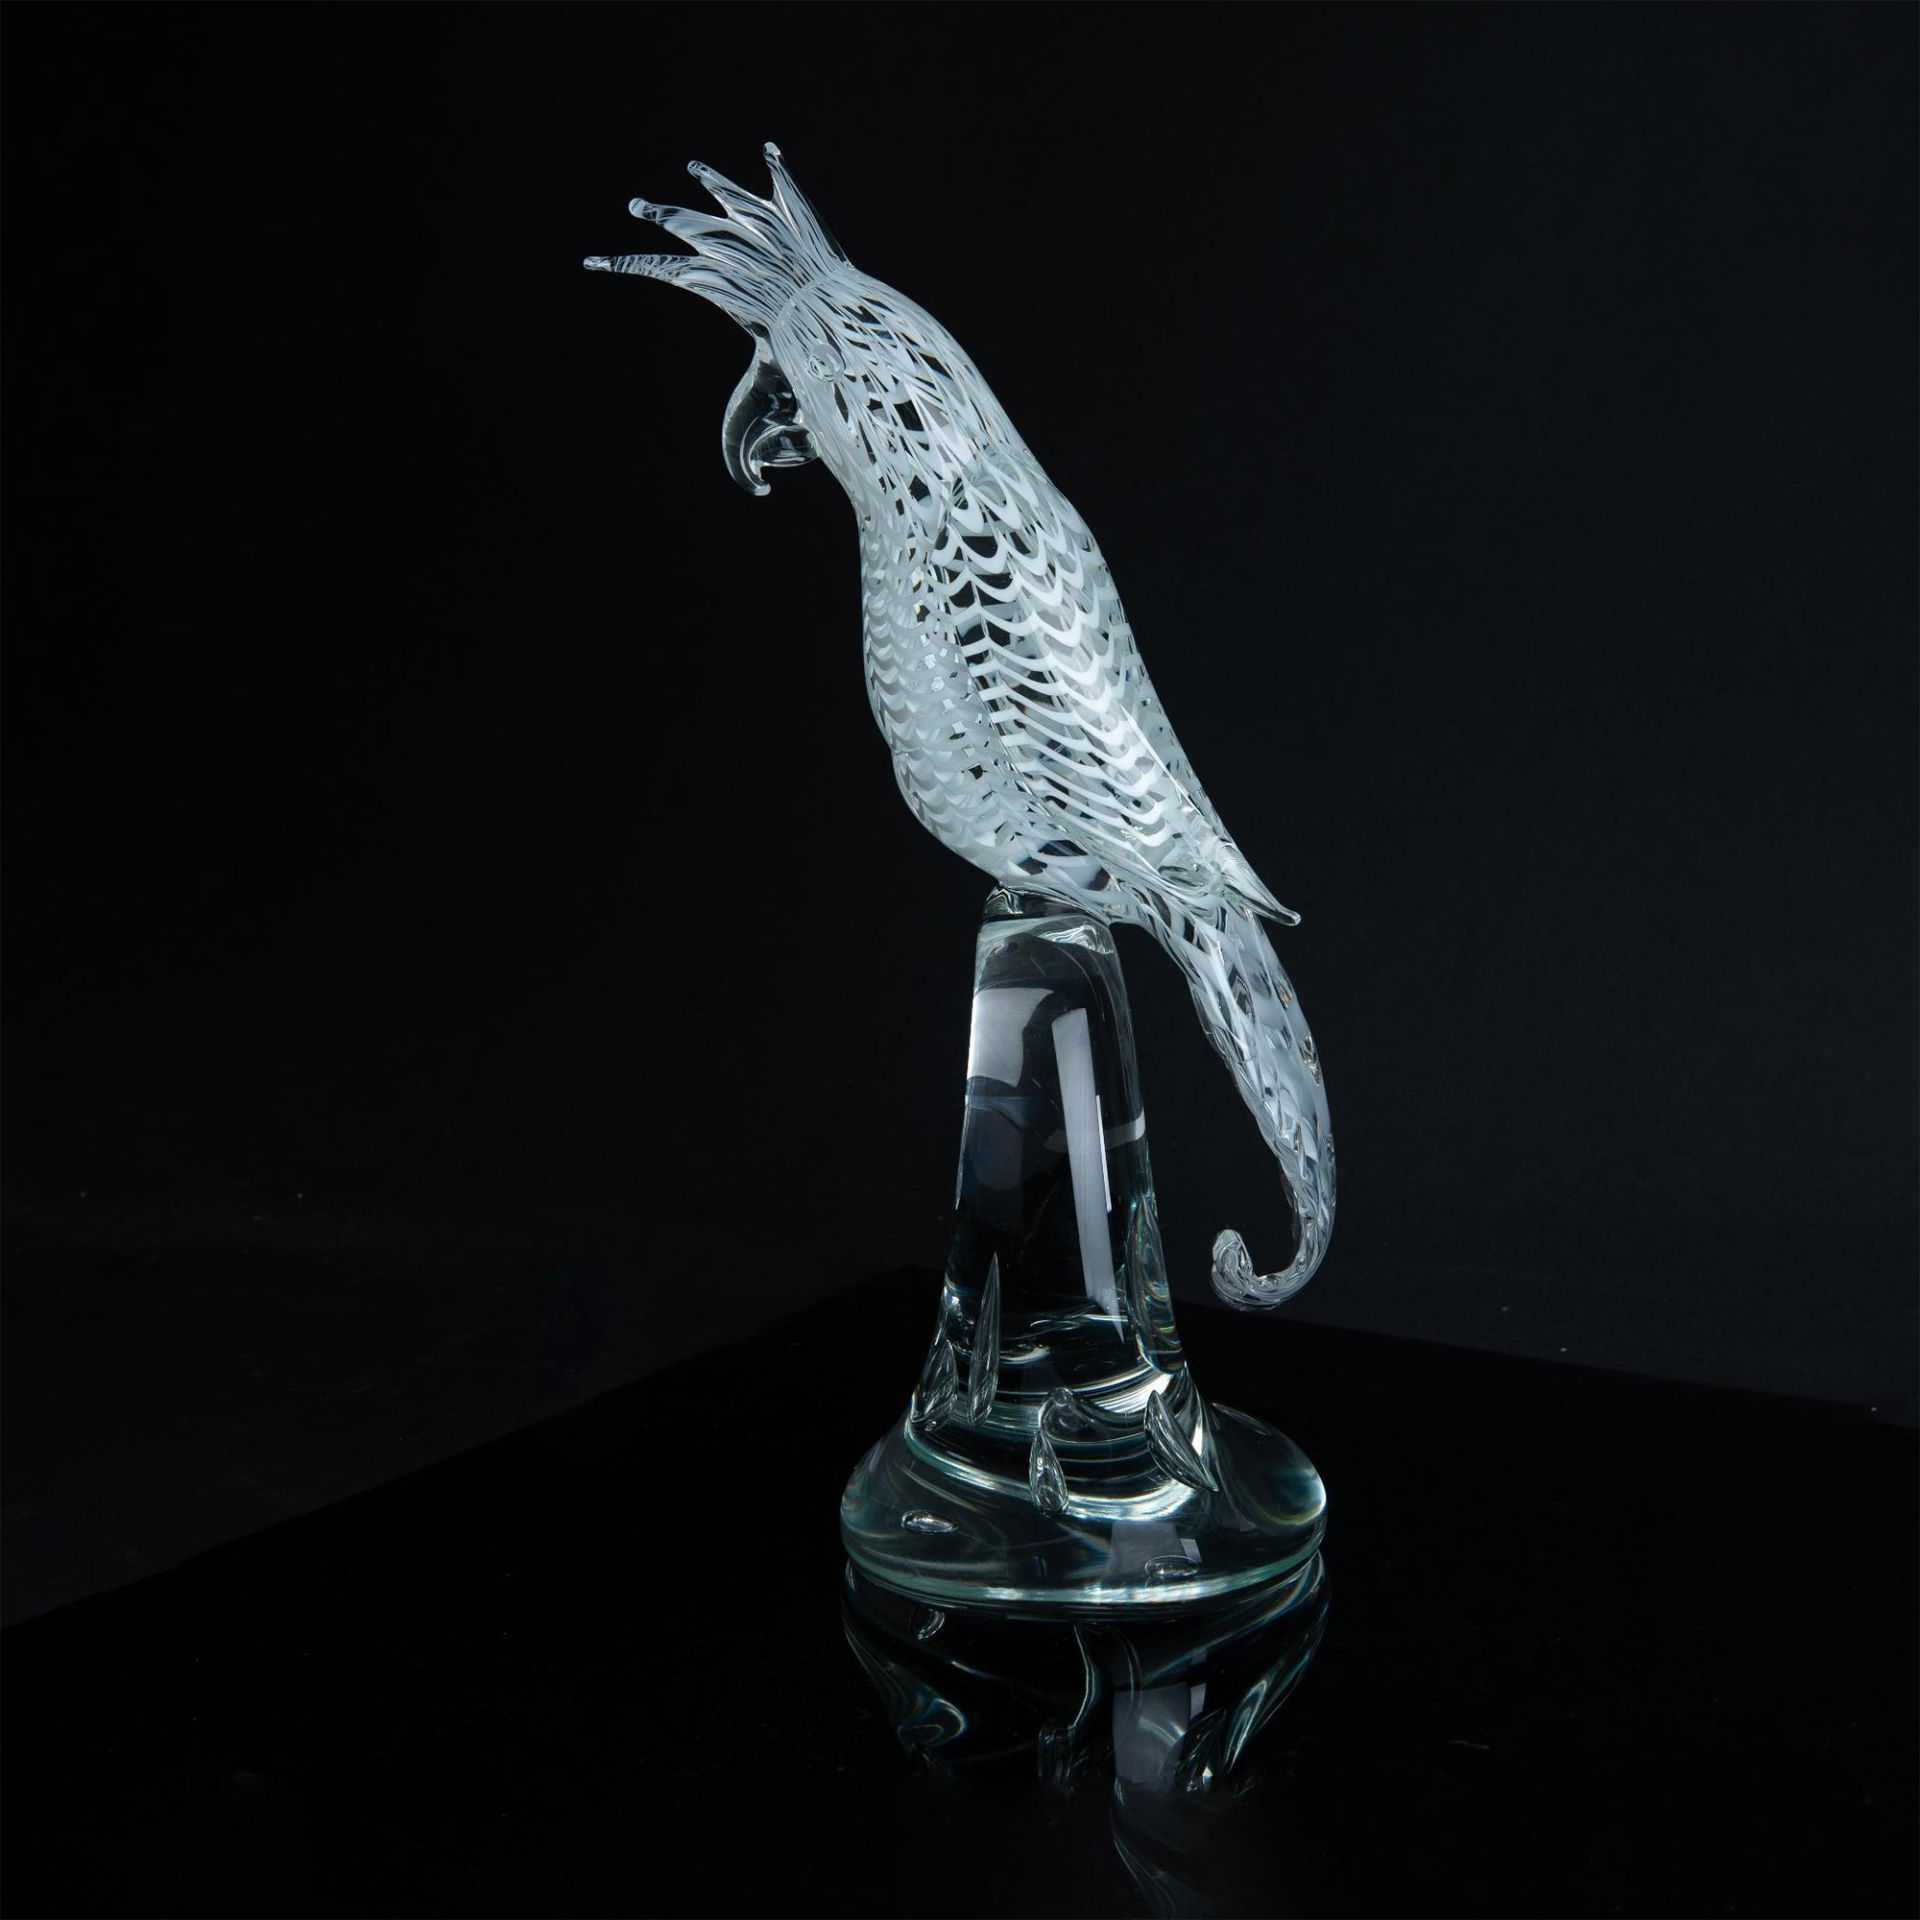 Murano Licio Zanetti Cockatoo Art Glass Sculpture, Signed - Image 2 of 6